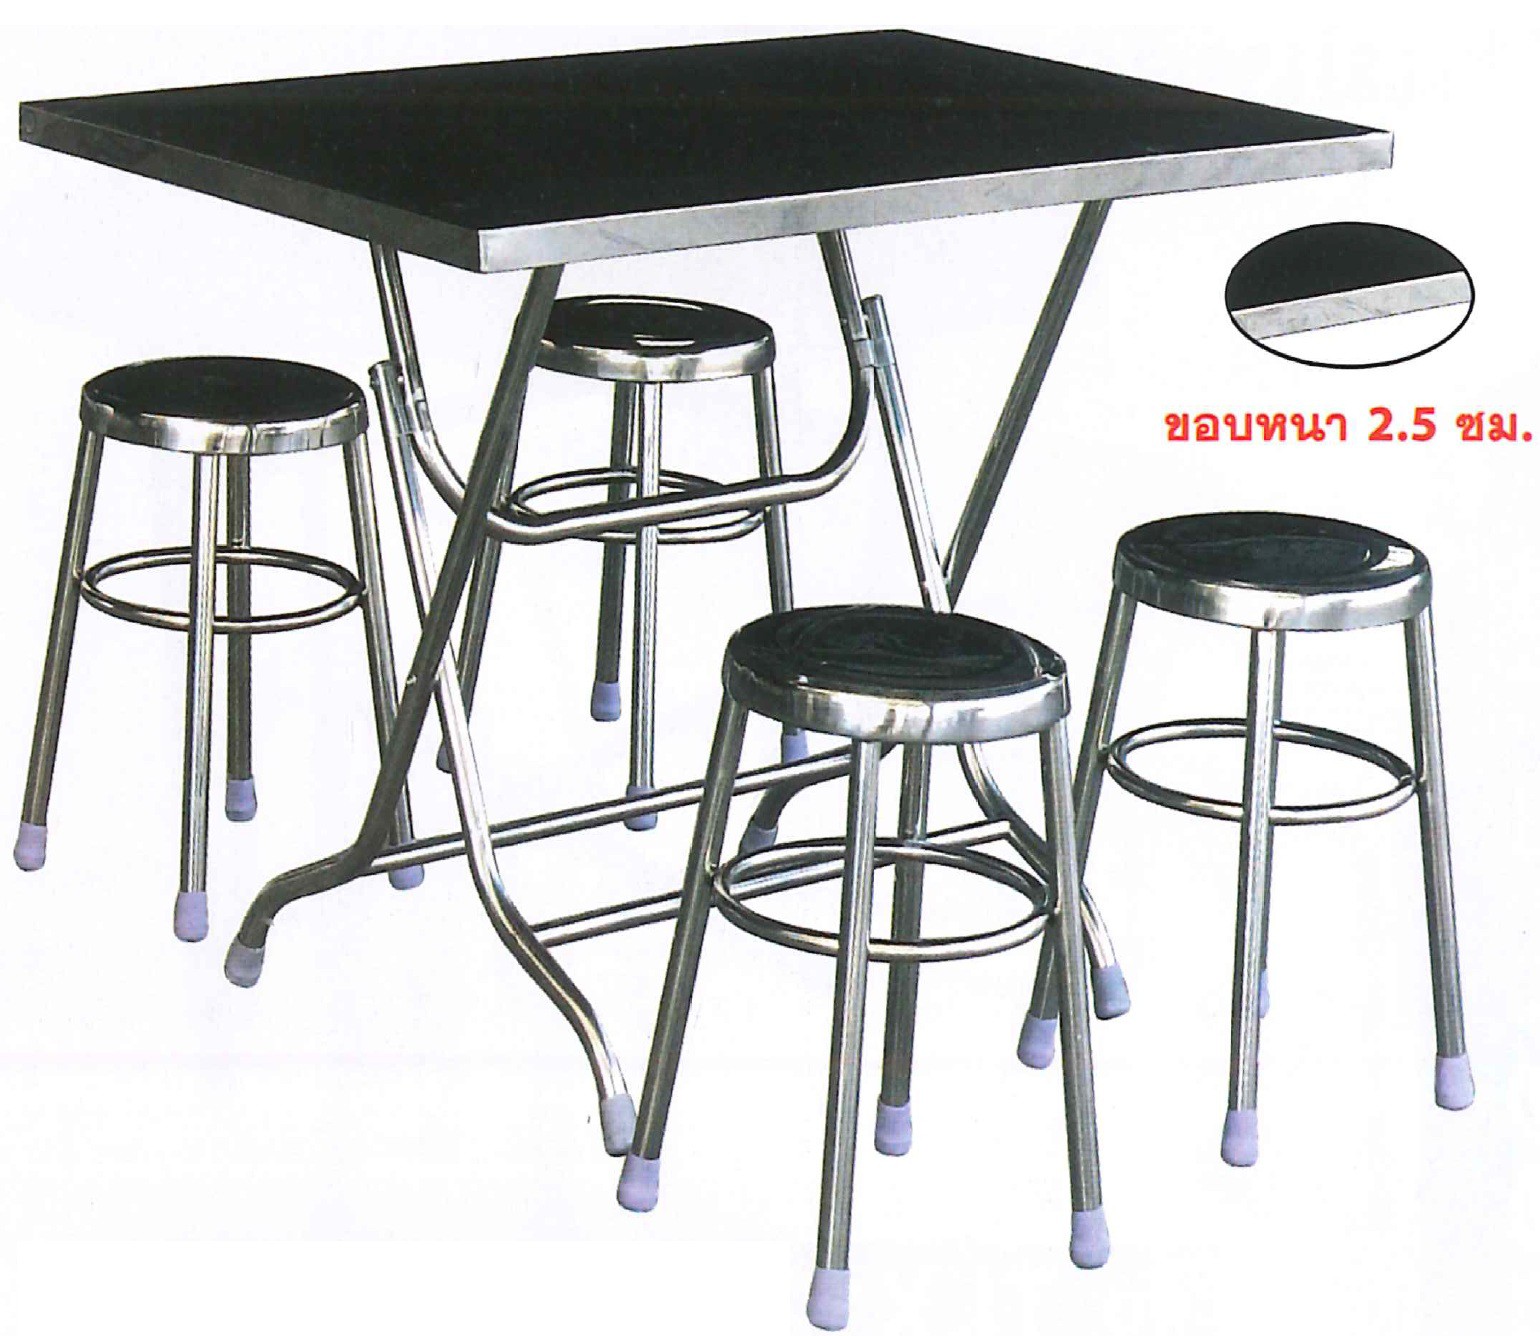 DG/TLY70113-1,โต๊ะสแตนเลส,โต๊ะพับสแตนเลส,โต๊ะรับประทานอาหาร,โต๊ะพับ,โต๊ะเหลี่ยม,โต๊ะ,table